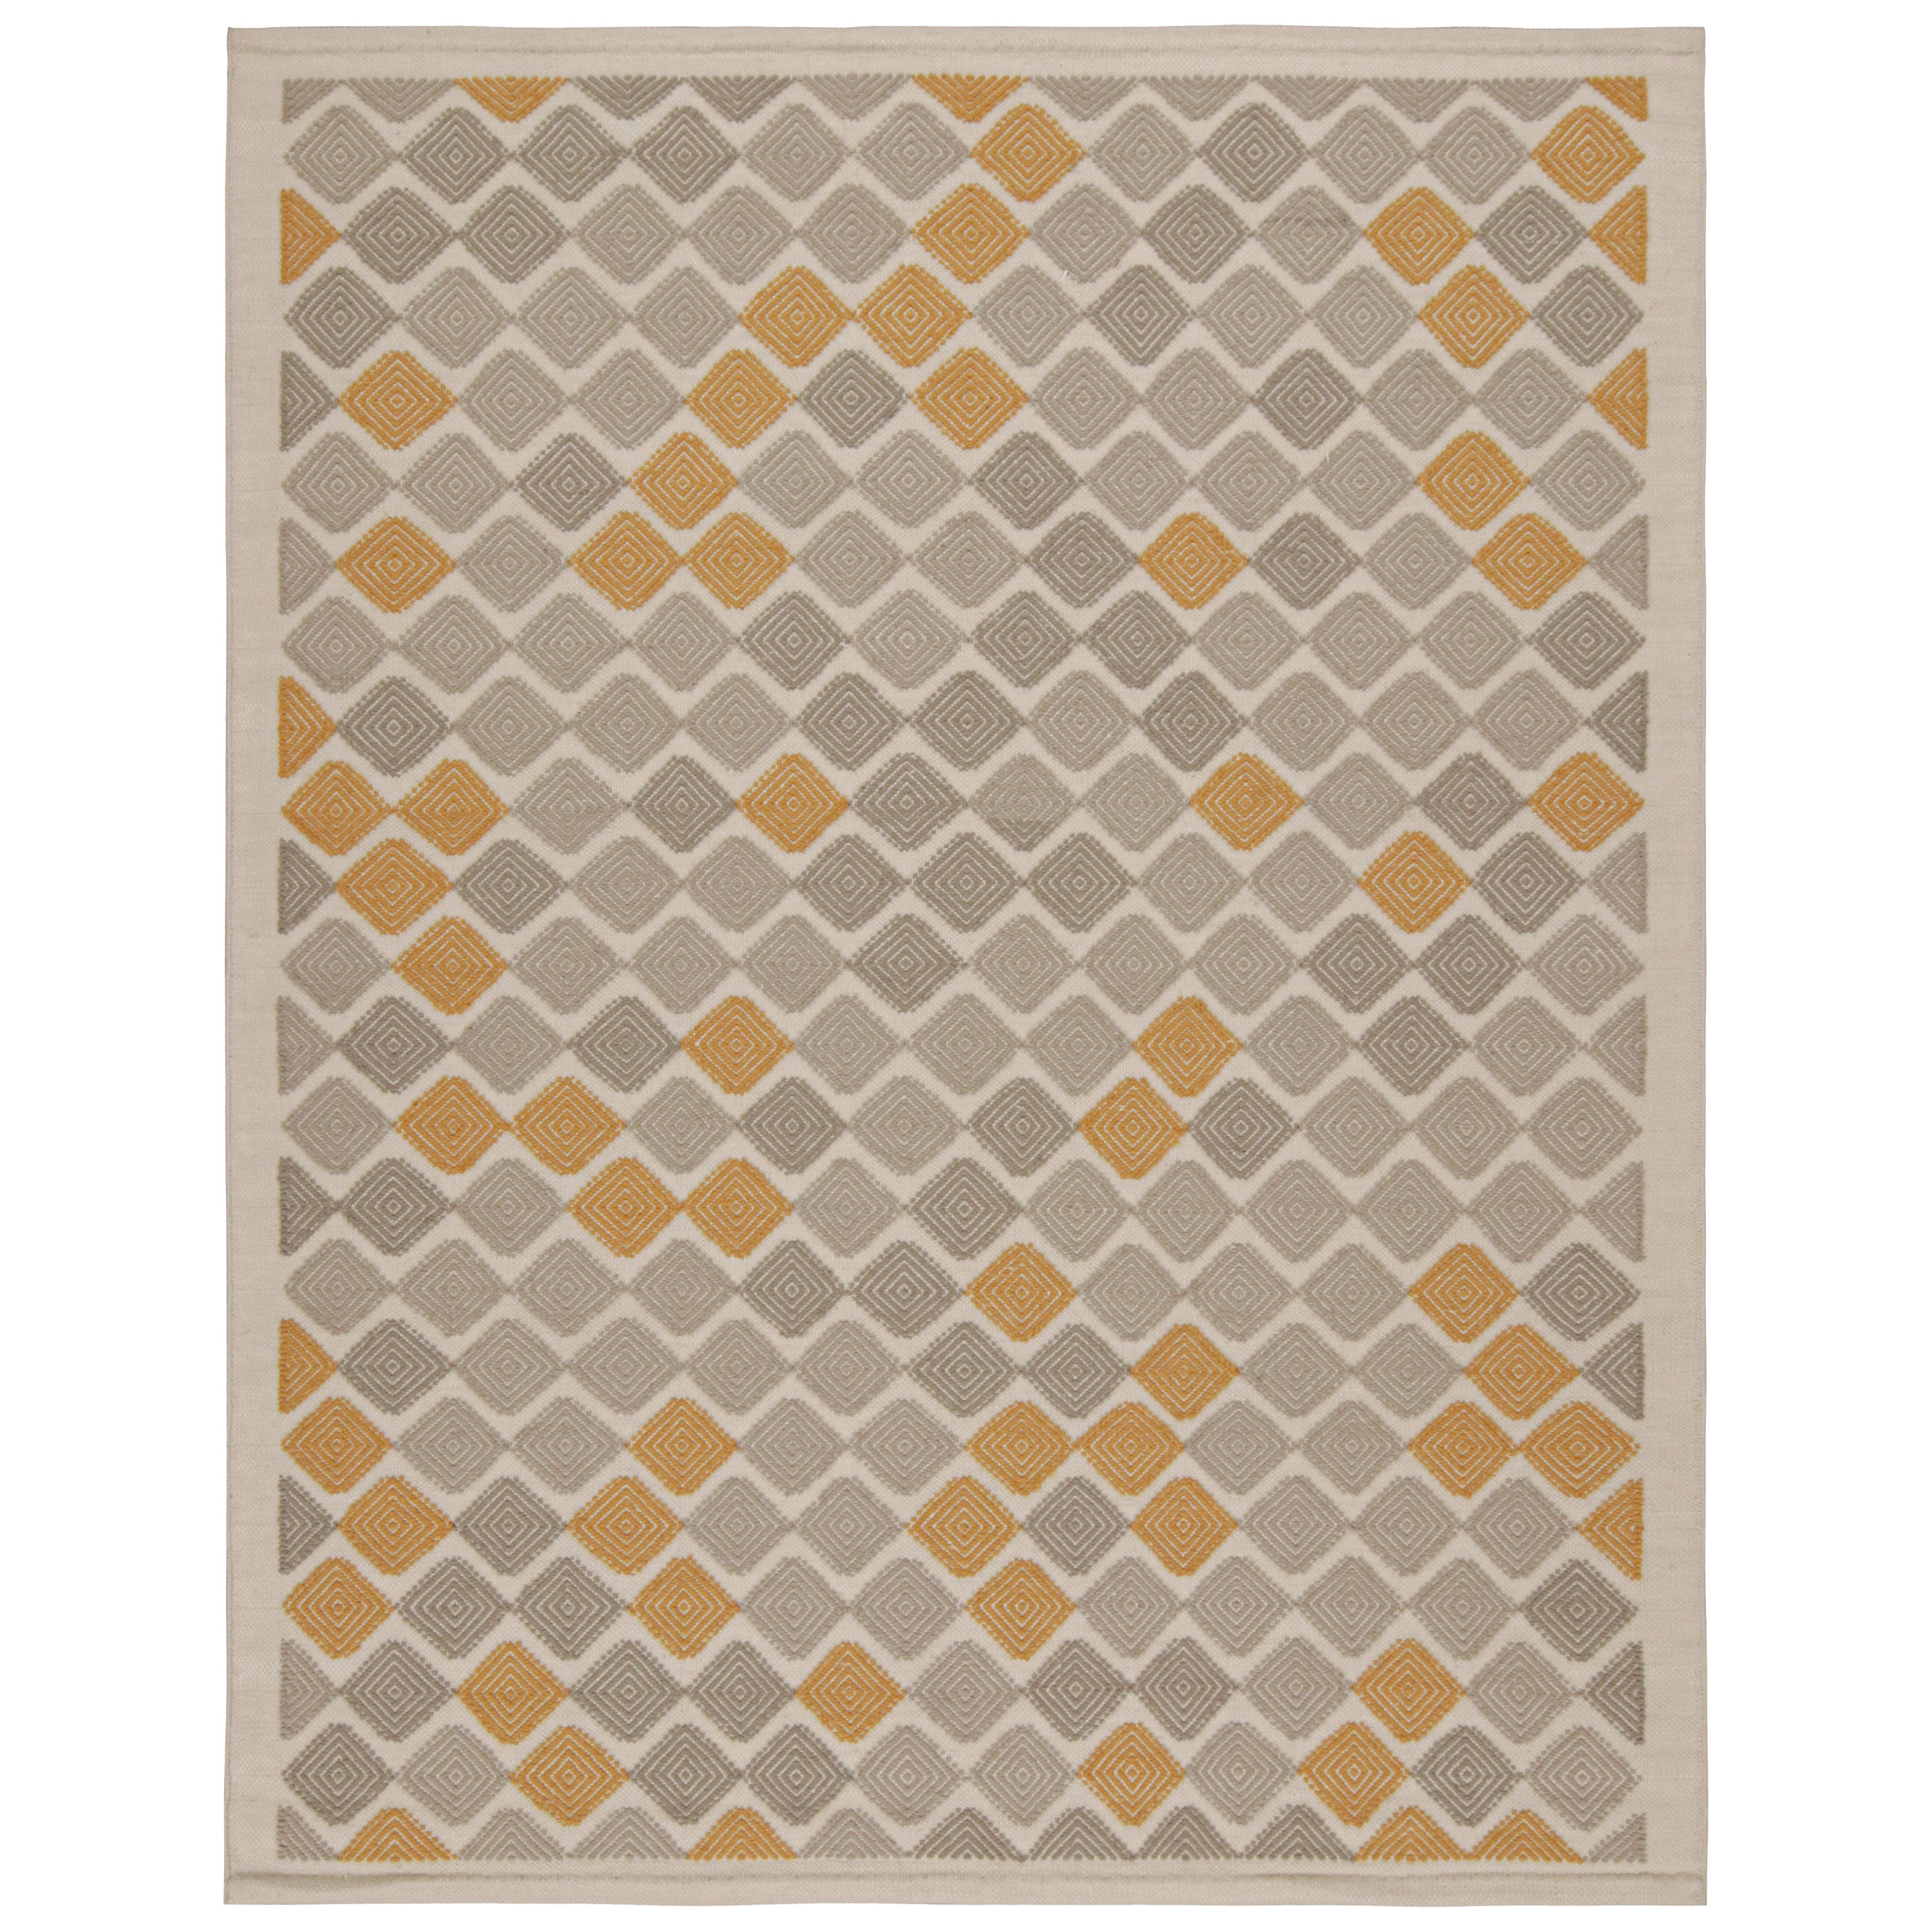 Rug & Kilims Teppich im skandinavischen Stil mit grauen und goldenen Mustern